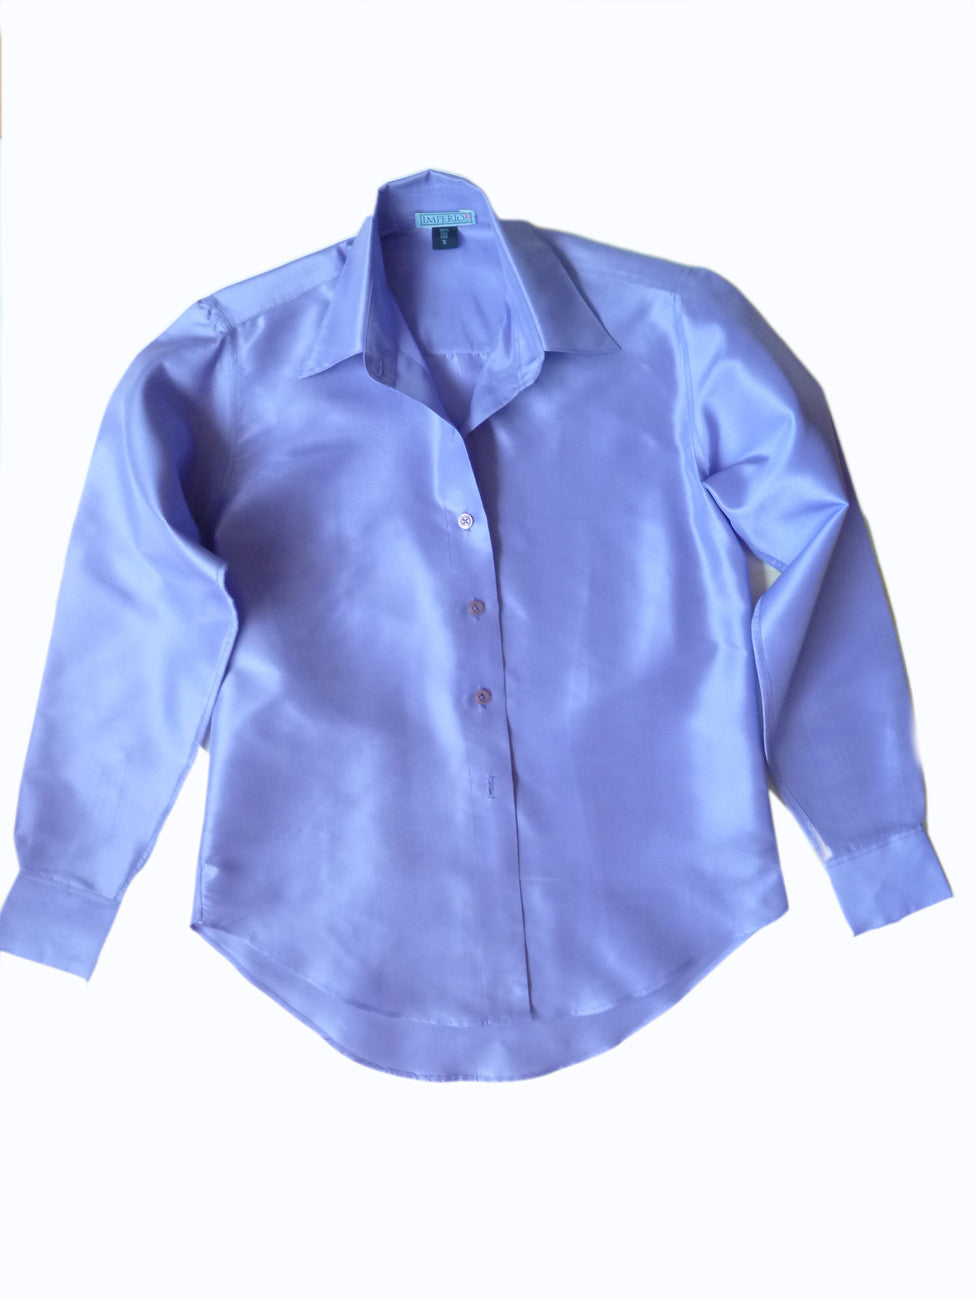 Thai Silk Button Down Shirt Lavender